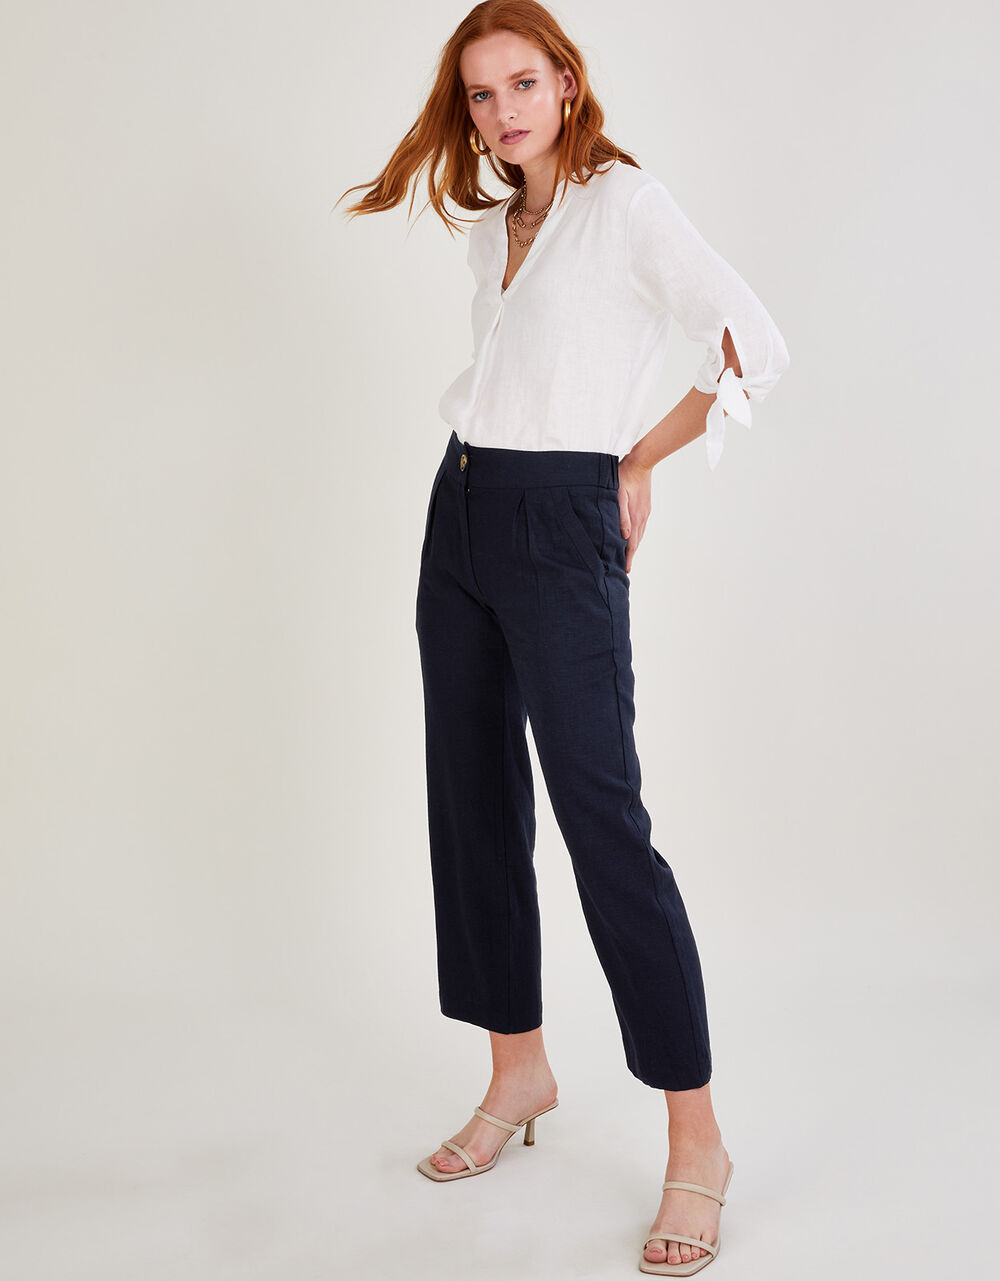 Women Women's Clothing | Layla Short Trousers in Linen Blend Blue - SQ96374